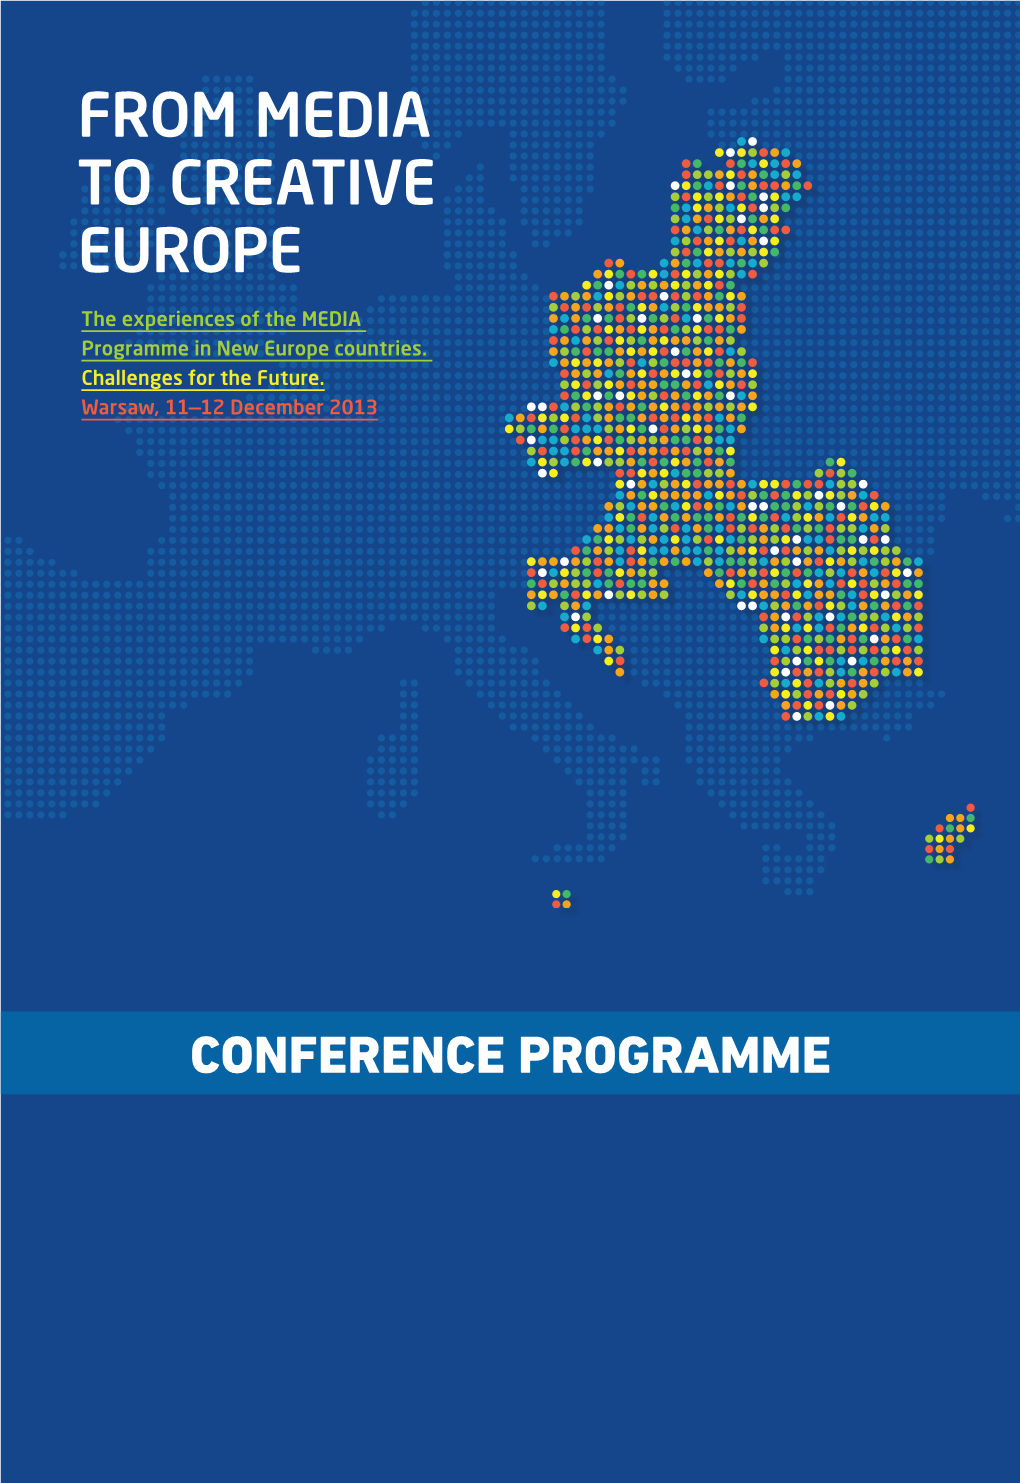 Conference Programme Conference Programme